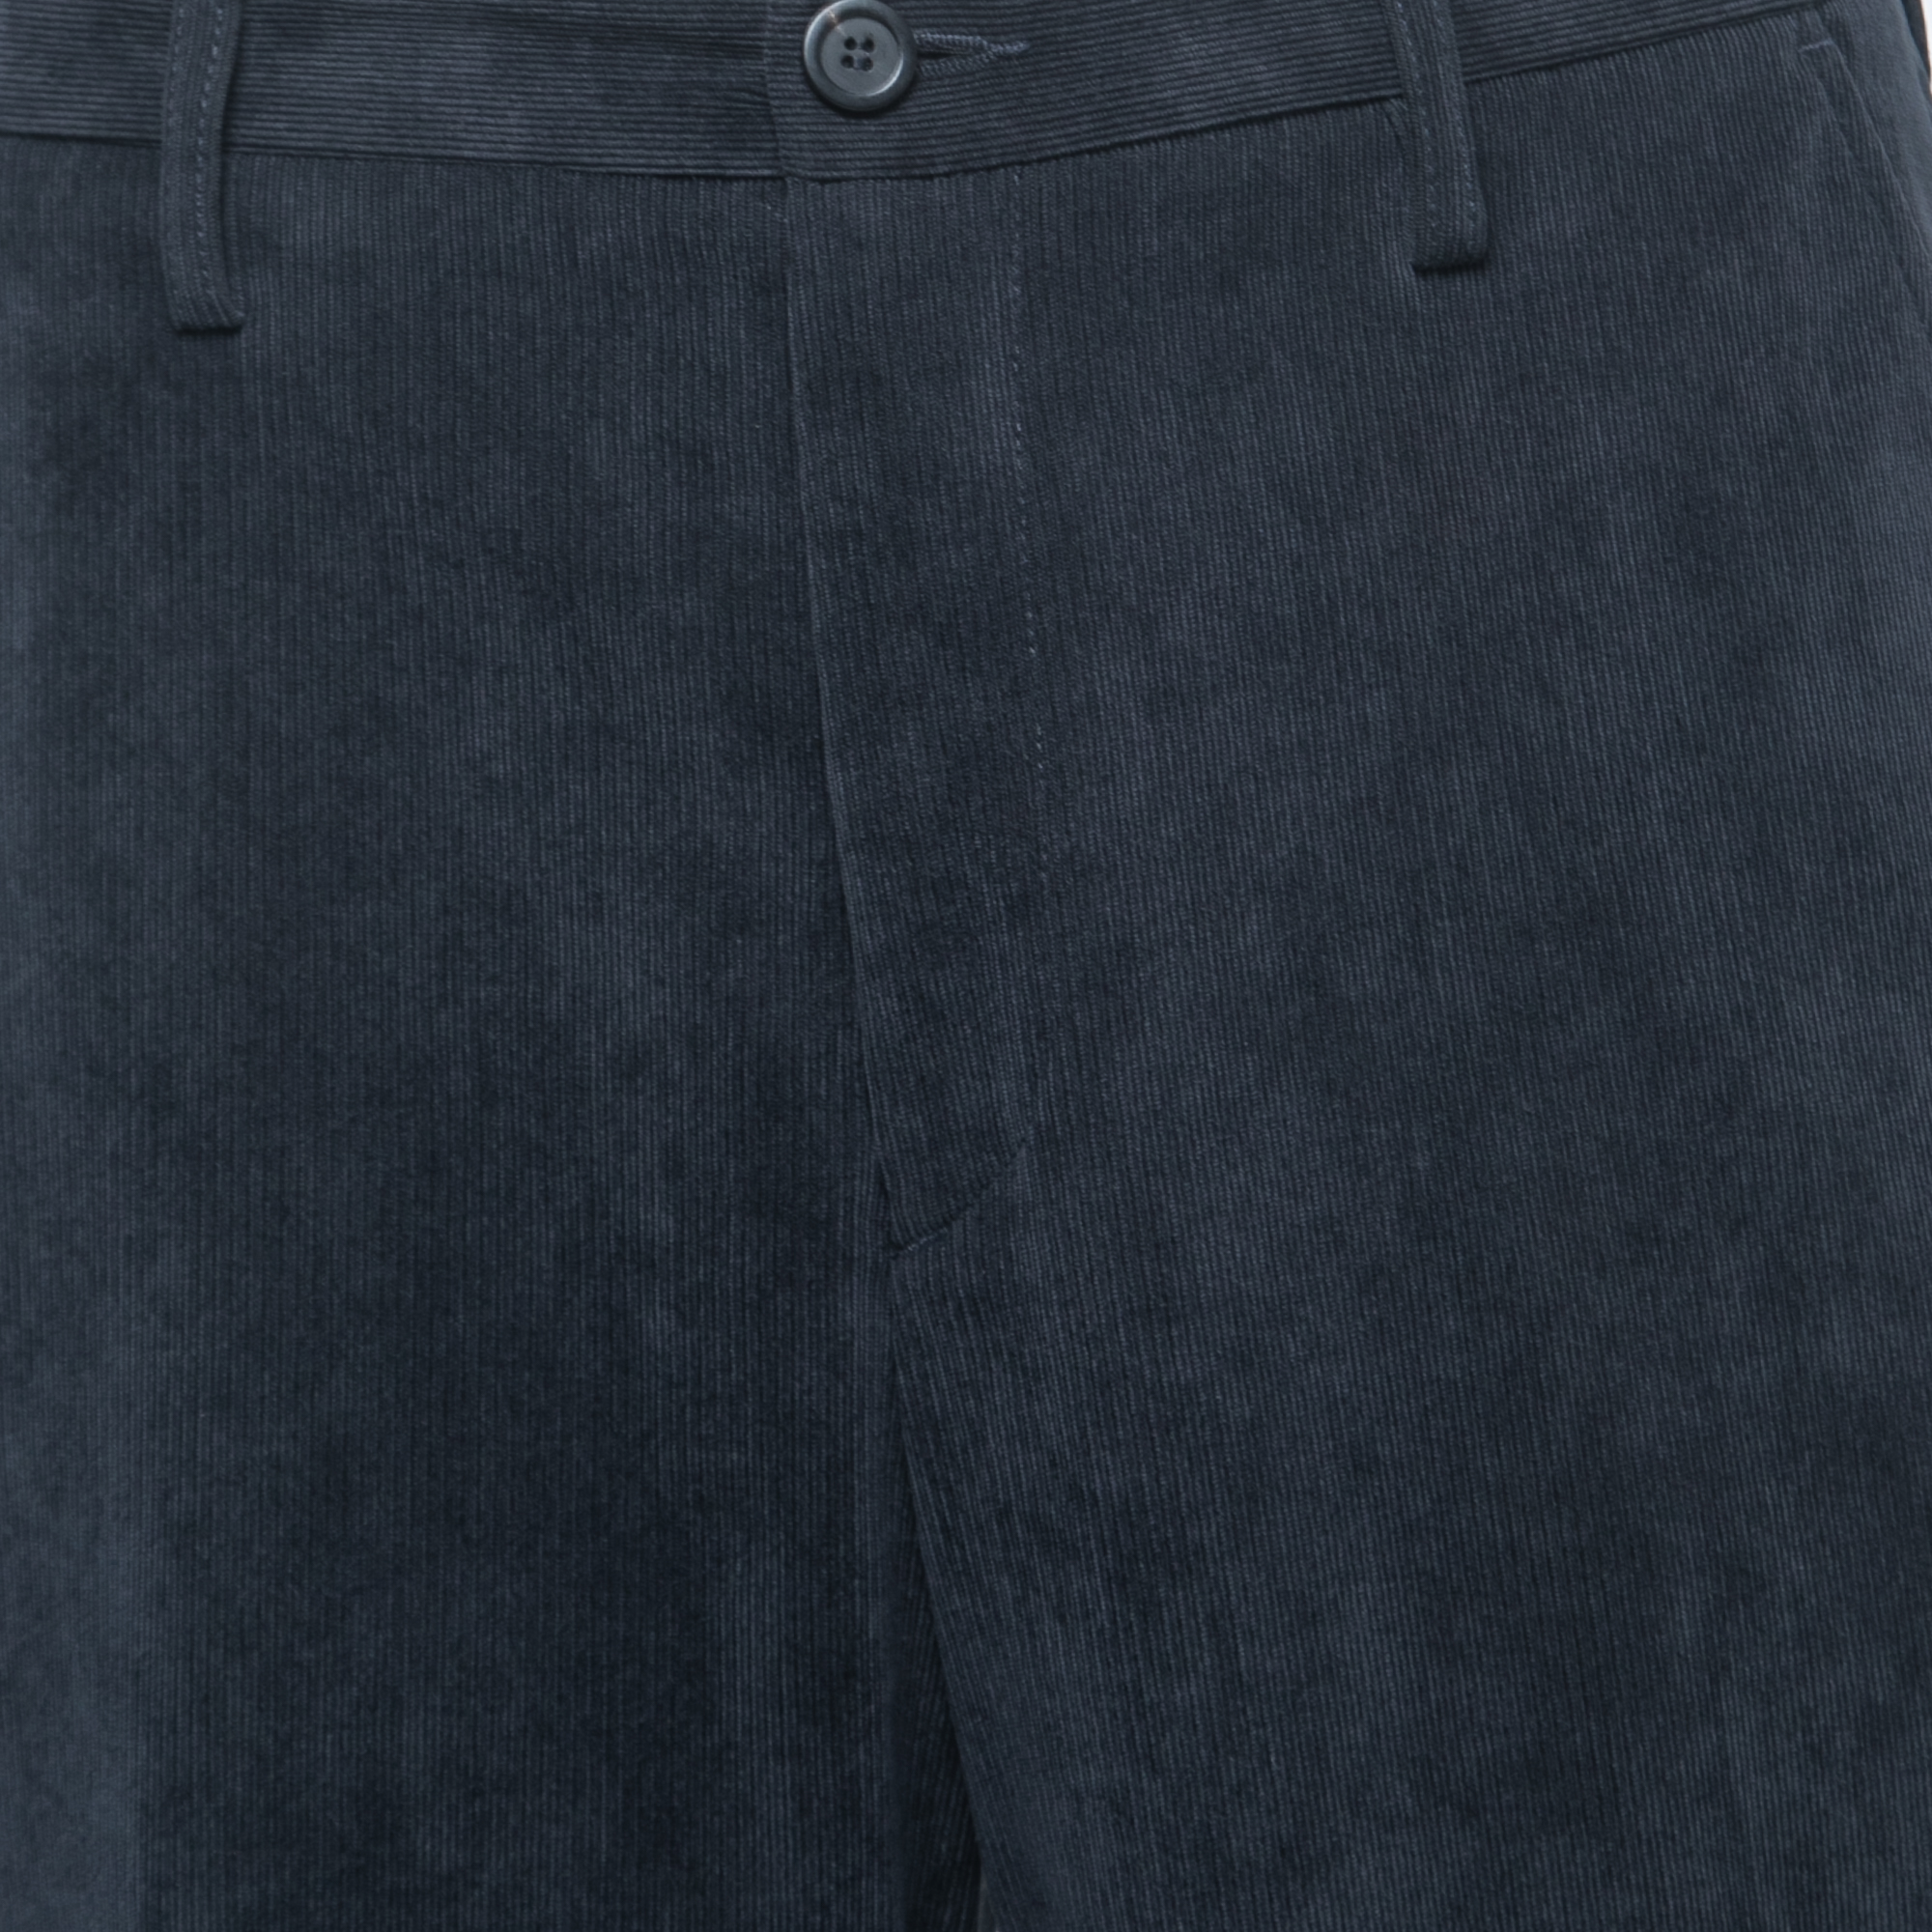 Giorgio Armani Navy Blue Corduroy Trousers XL